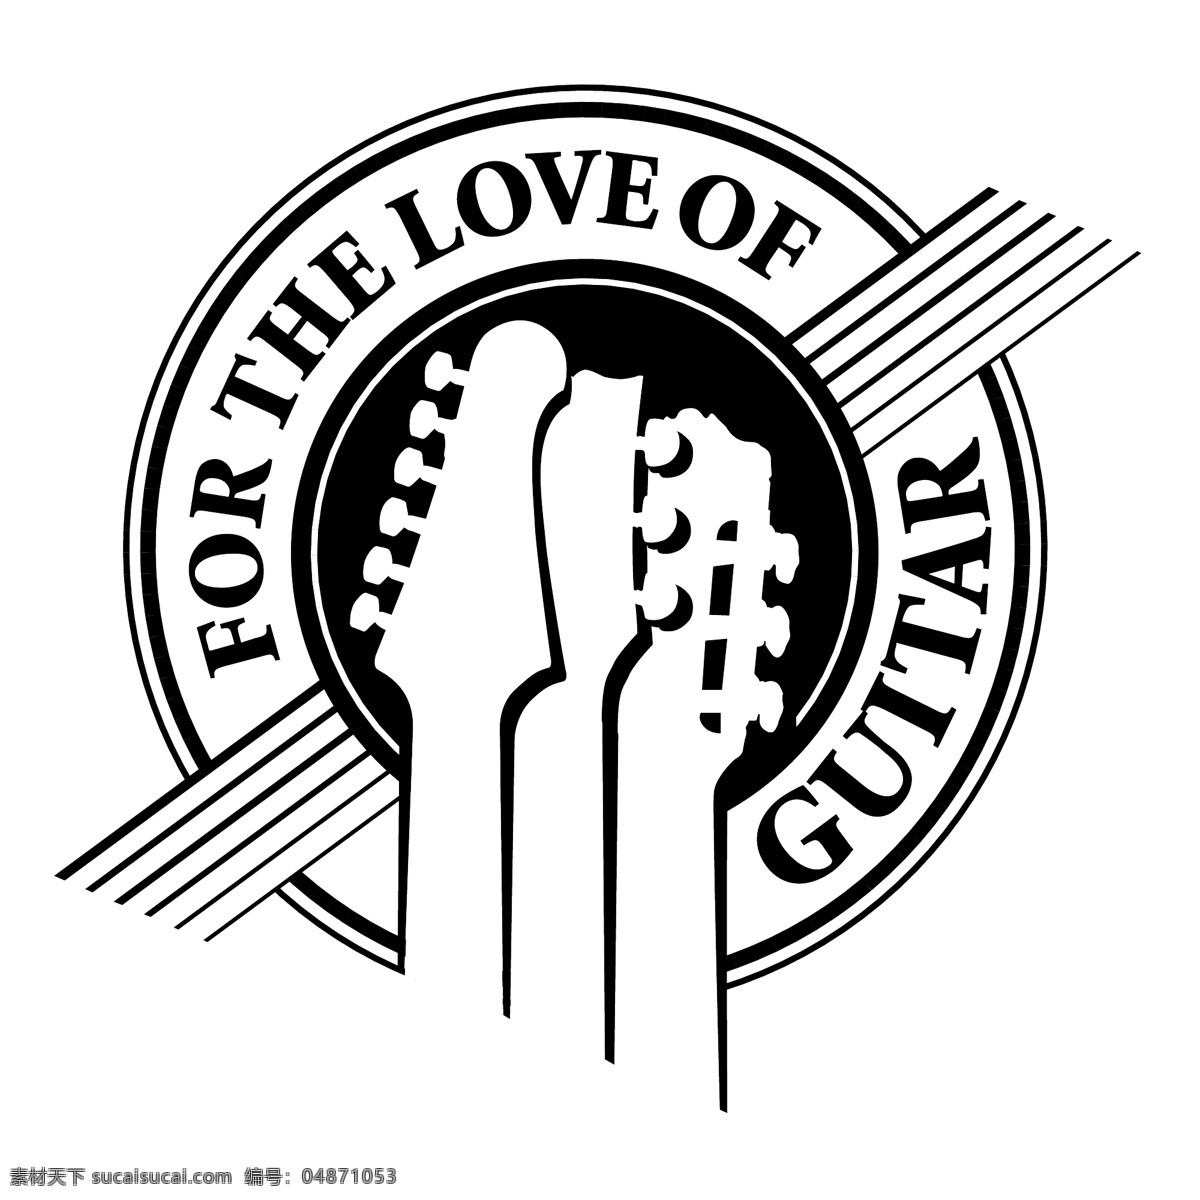 吉他之爱 矢量标志下载 免费矢量标识 商标 品牌标识 标识 矢量 免费 品牌 公司 白色